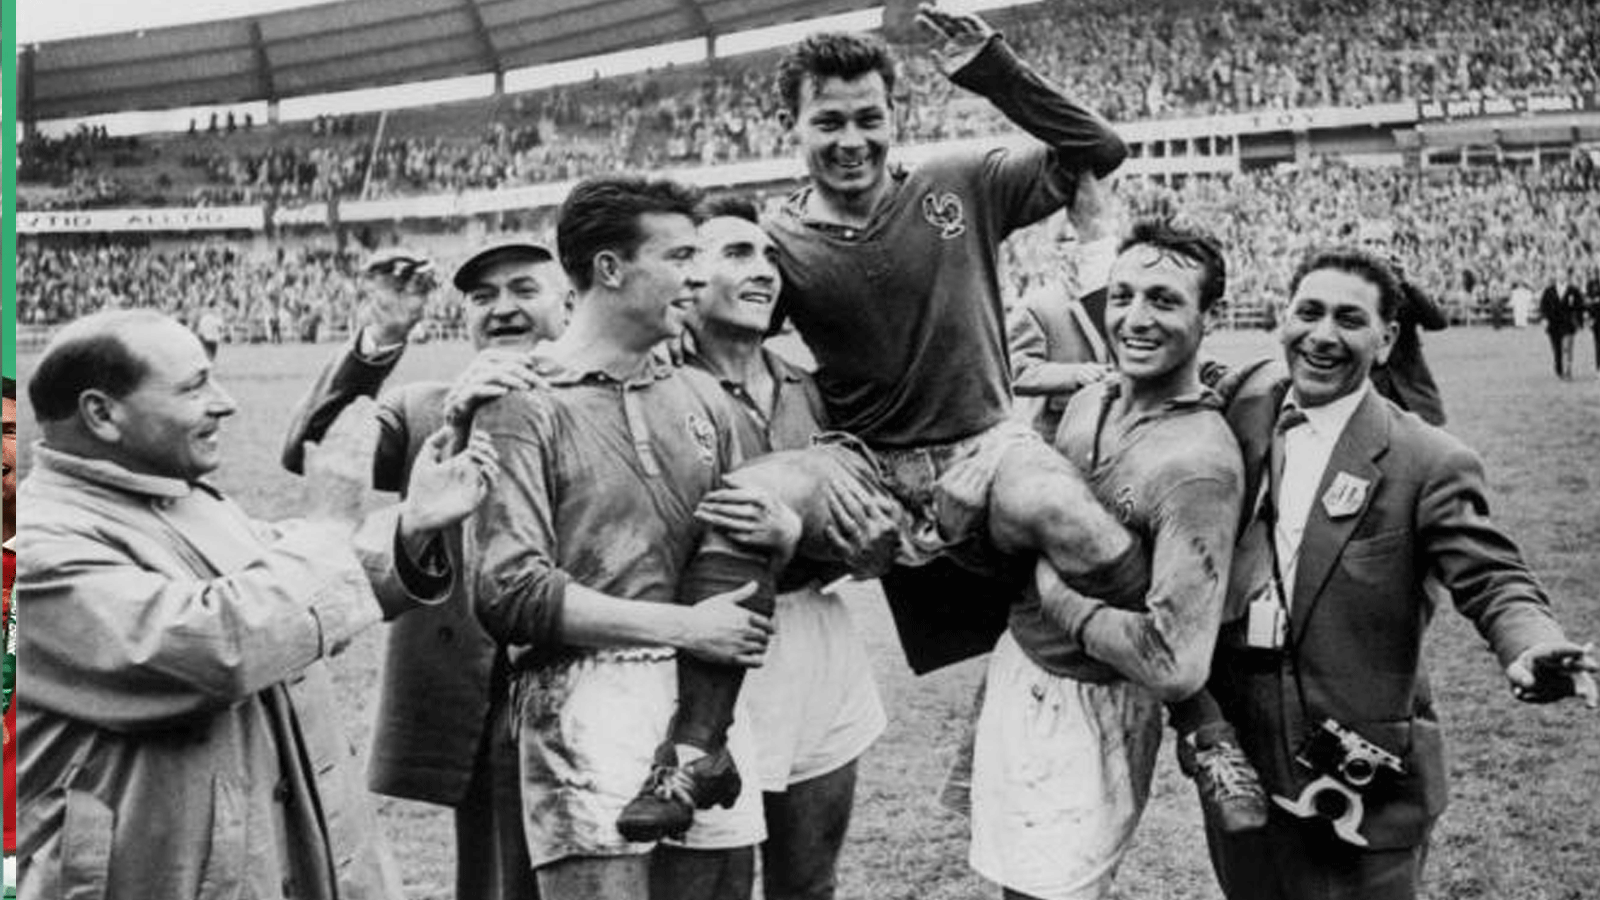 المهاجم الفرنسي جوست فونتين، محمولاً من قبل زملائه إيفون دوي وأندريه ليروند وجان فنسنت (من اليسار إلى اليمين) بعد تسجيله أربعة أهداف ضد ألمانيا في 28 حزيران\يونيو 1958 في غوتنبرج بالسويد